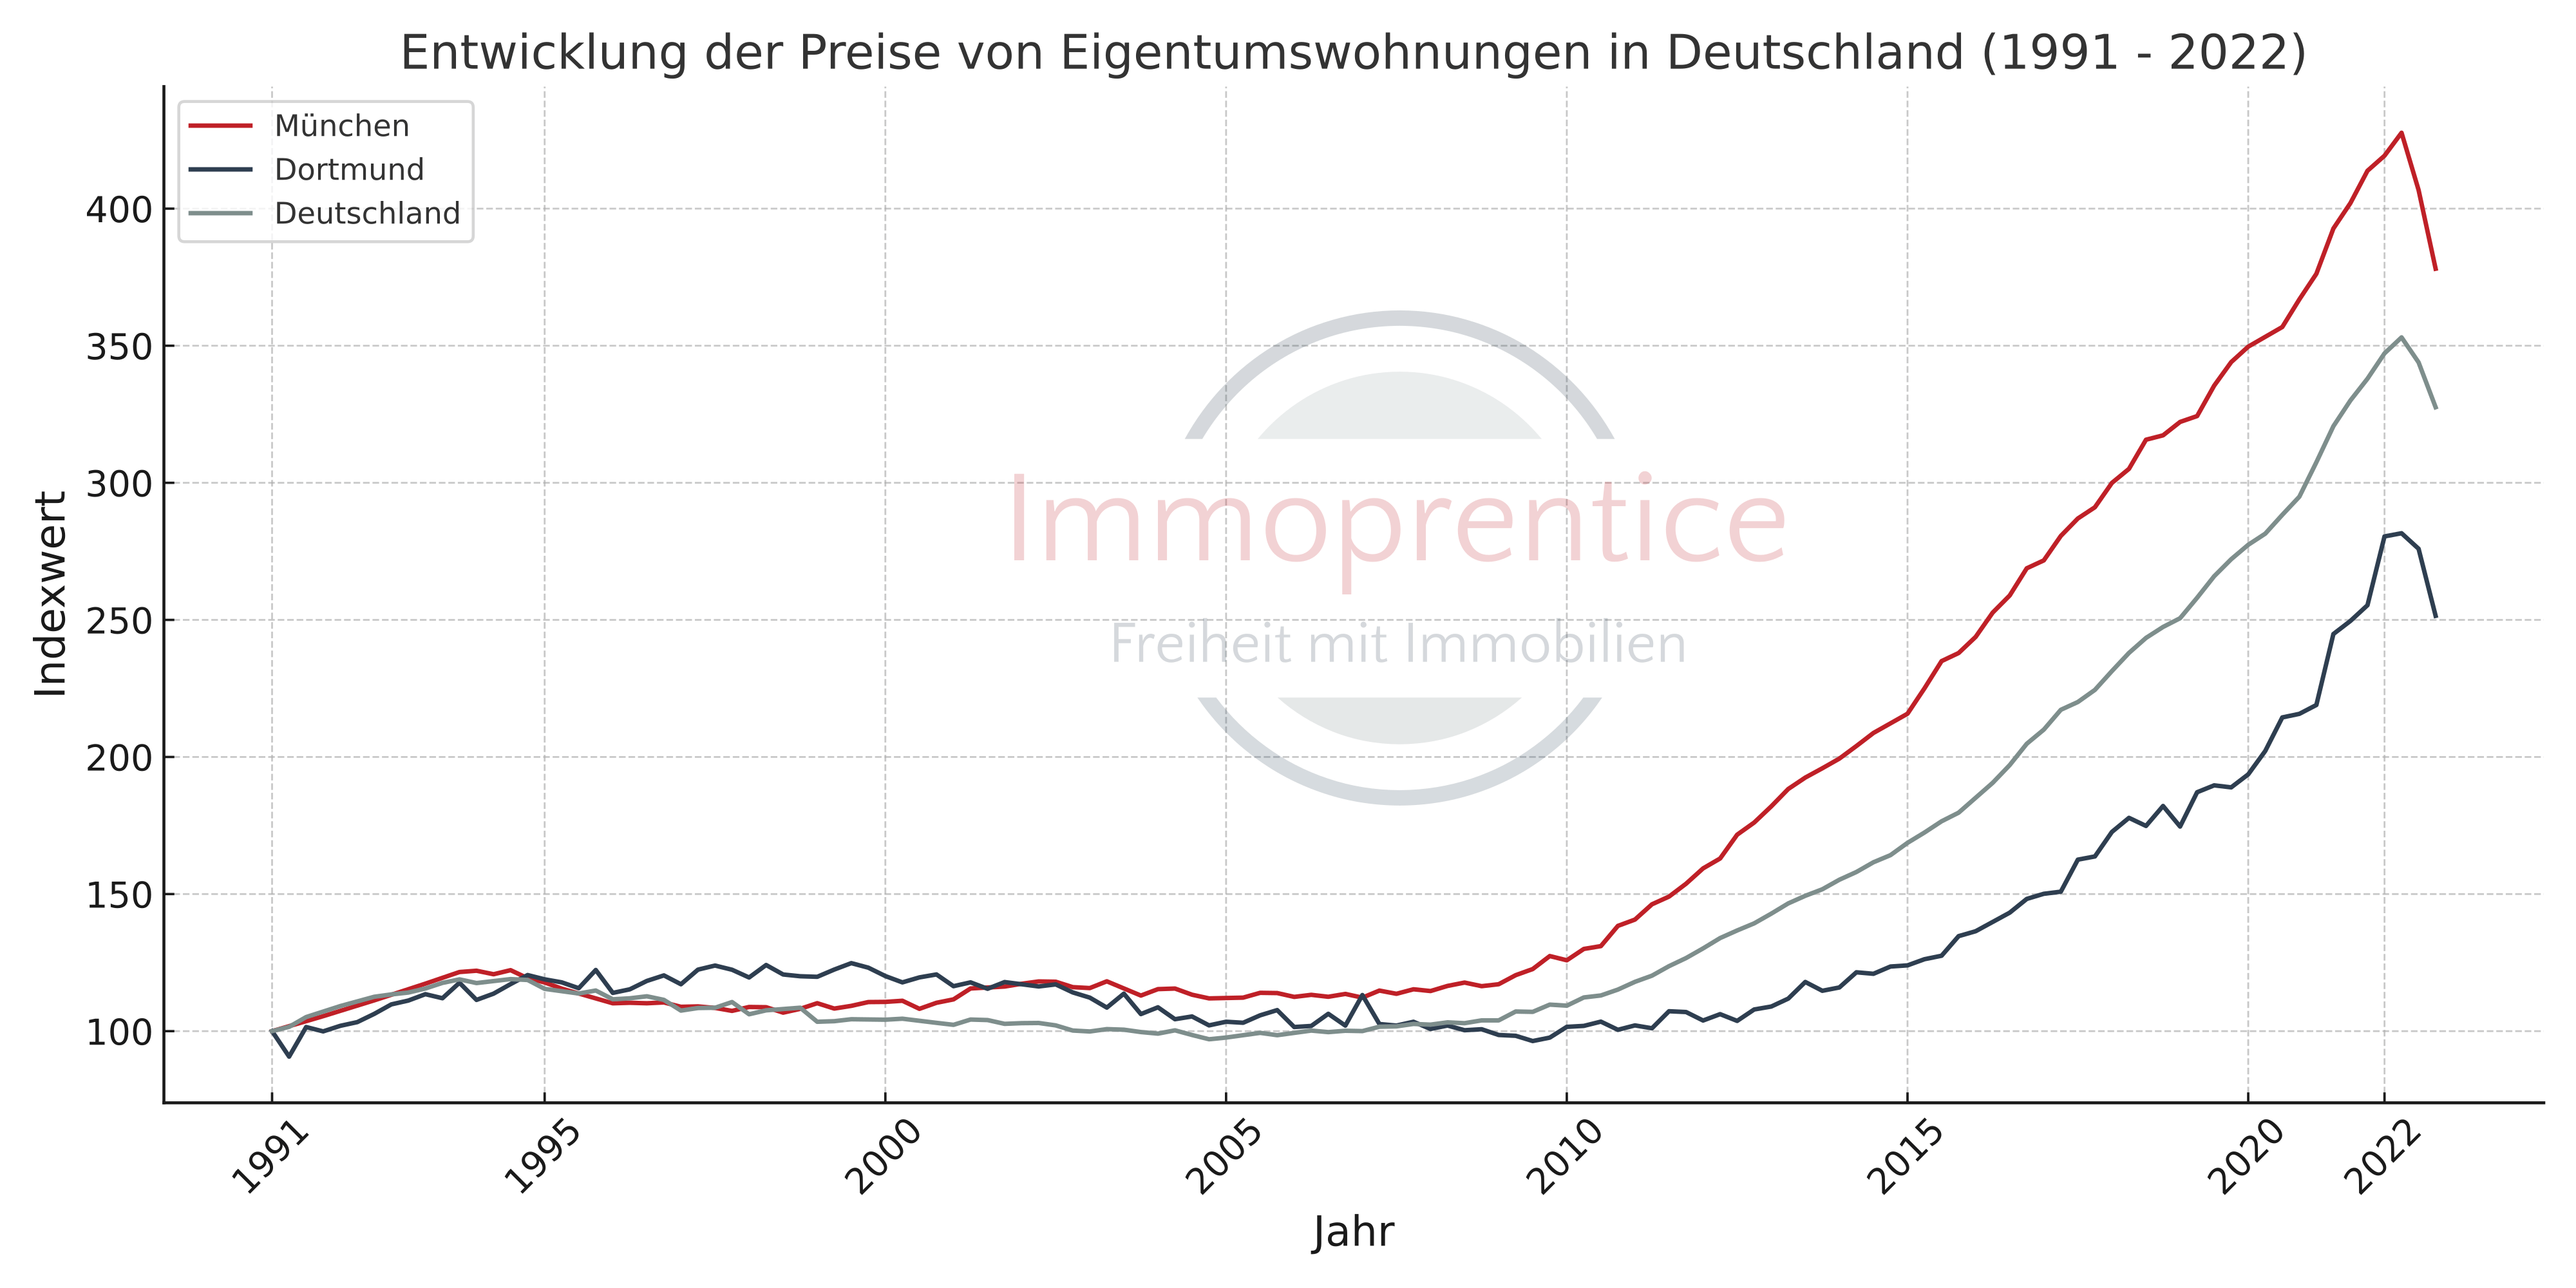 Vergleich der Immobilienpreisentwicklung zwischen München, Dortmund und dem Deutschen Immobilienmarkt. München wuchs stärker als der Gesamtmarkt, Dortmund schwächer.